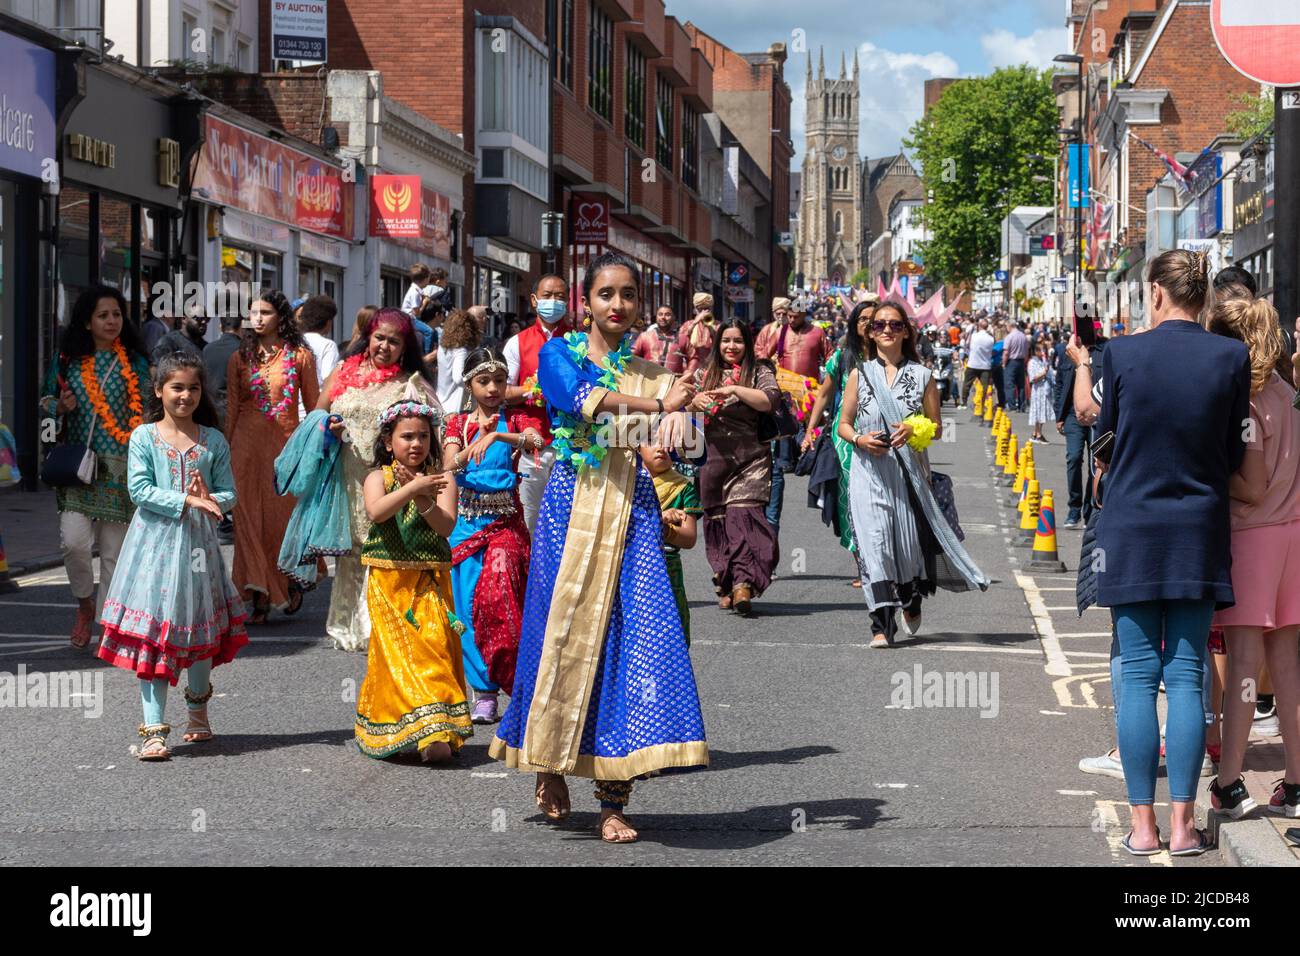 Danseurs indiens participant au Grand Parade à la fête de Victoria, un événement annuel à Aldershot, Hampshire, Angleterre, Royaume-Uni. Banque D'Images